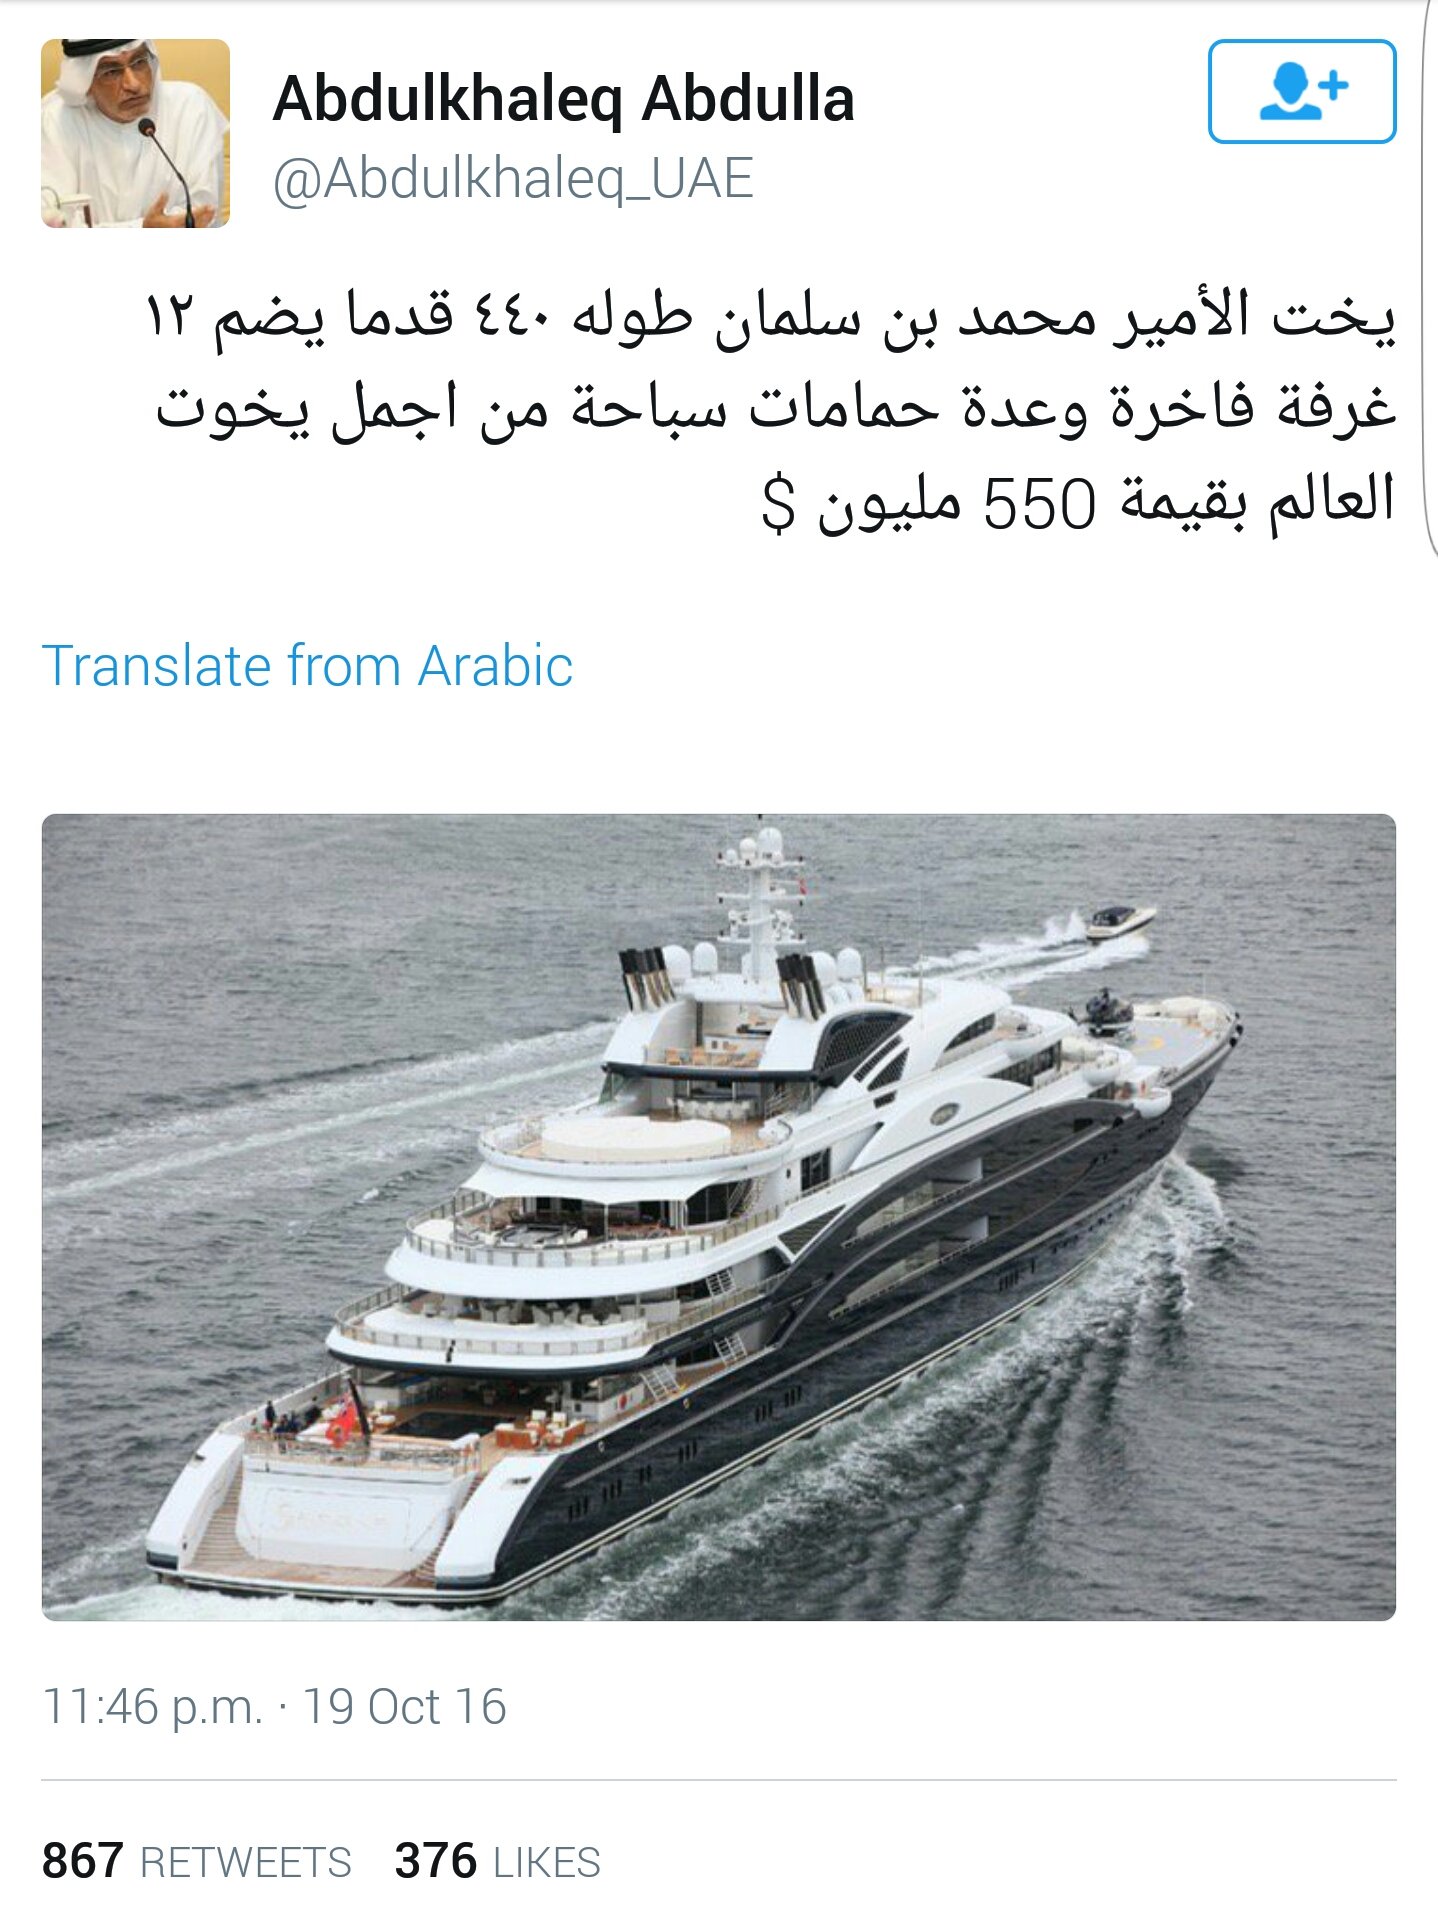 عبدالخالق عبدالله يتراجع عن تغريدة "يخت محمد بن سلمان" ويحذفها.. ماذا حدث؟!